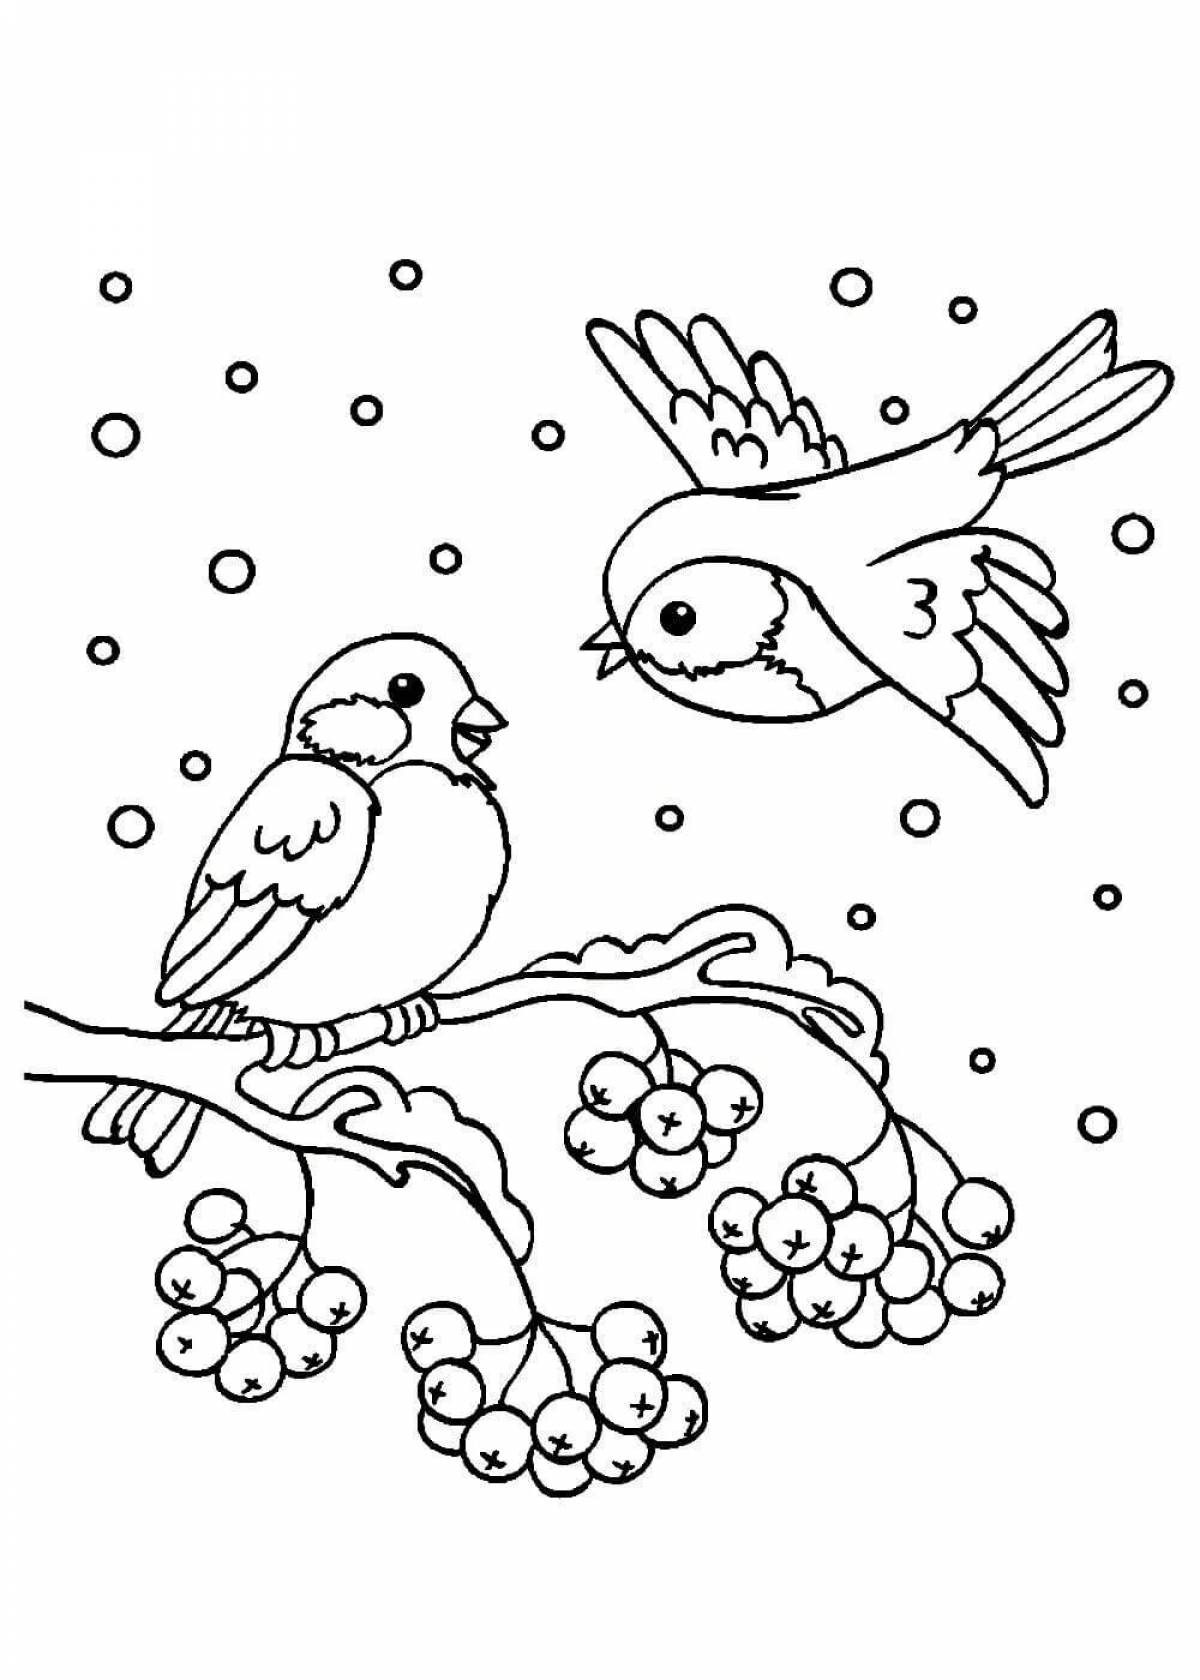 Снегири на ветке рябины зимой для детей #4